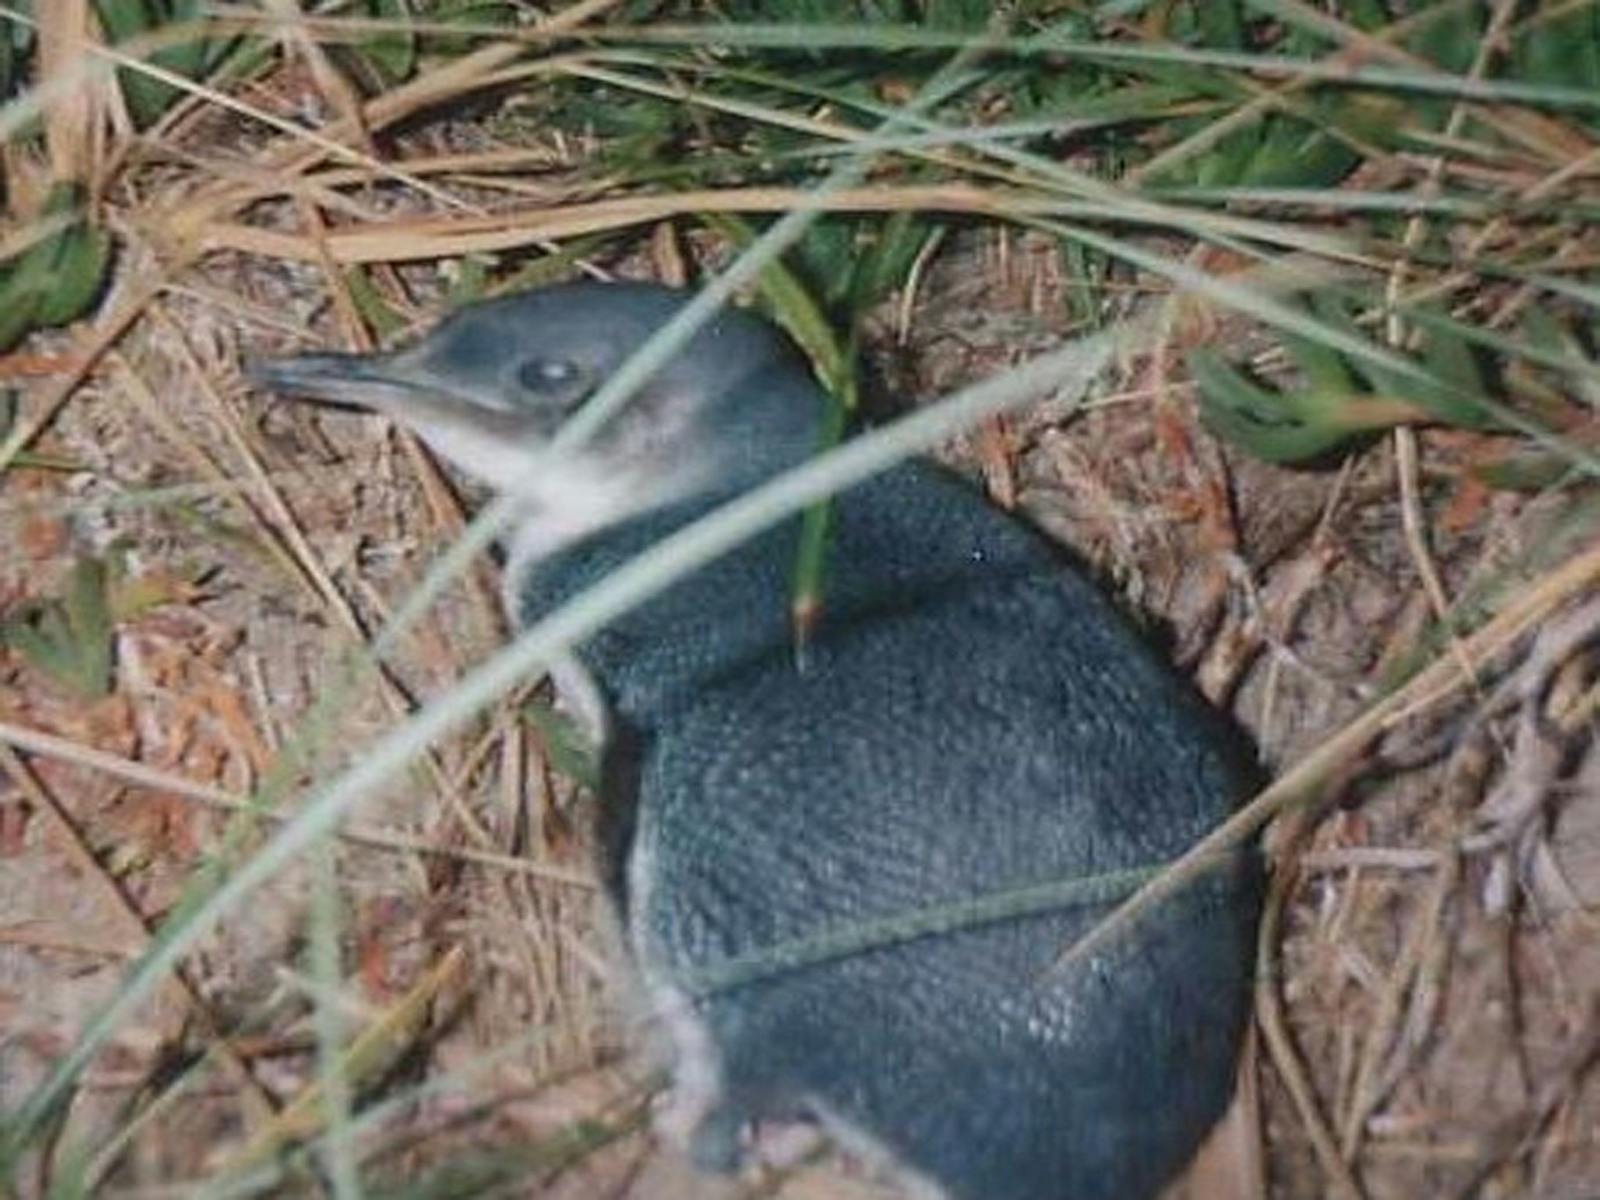 Little Penguin outside nest